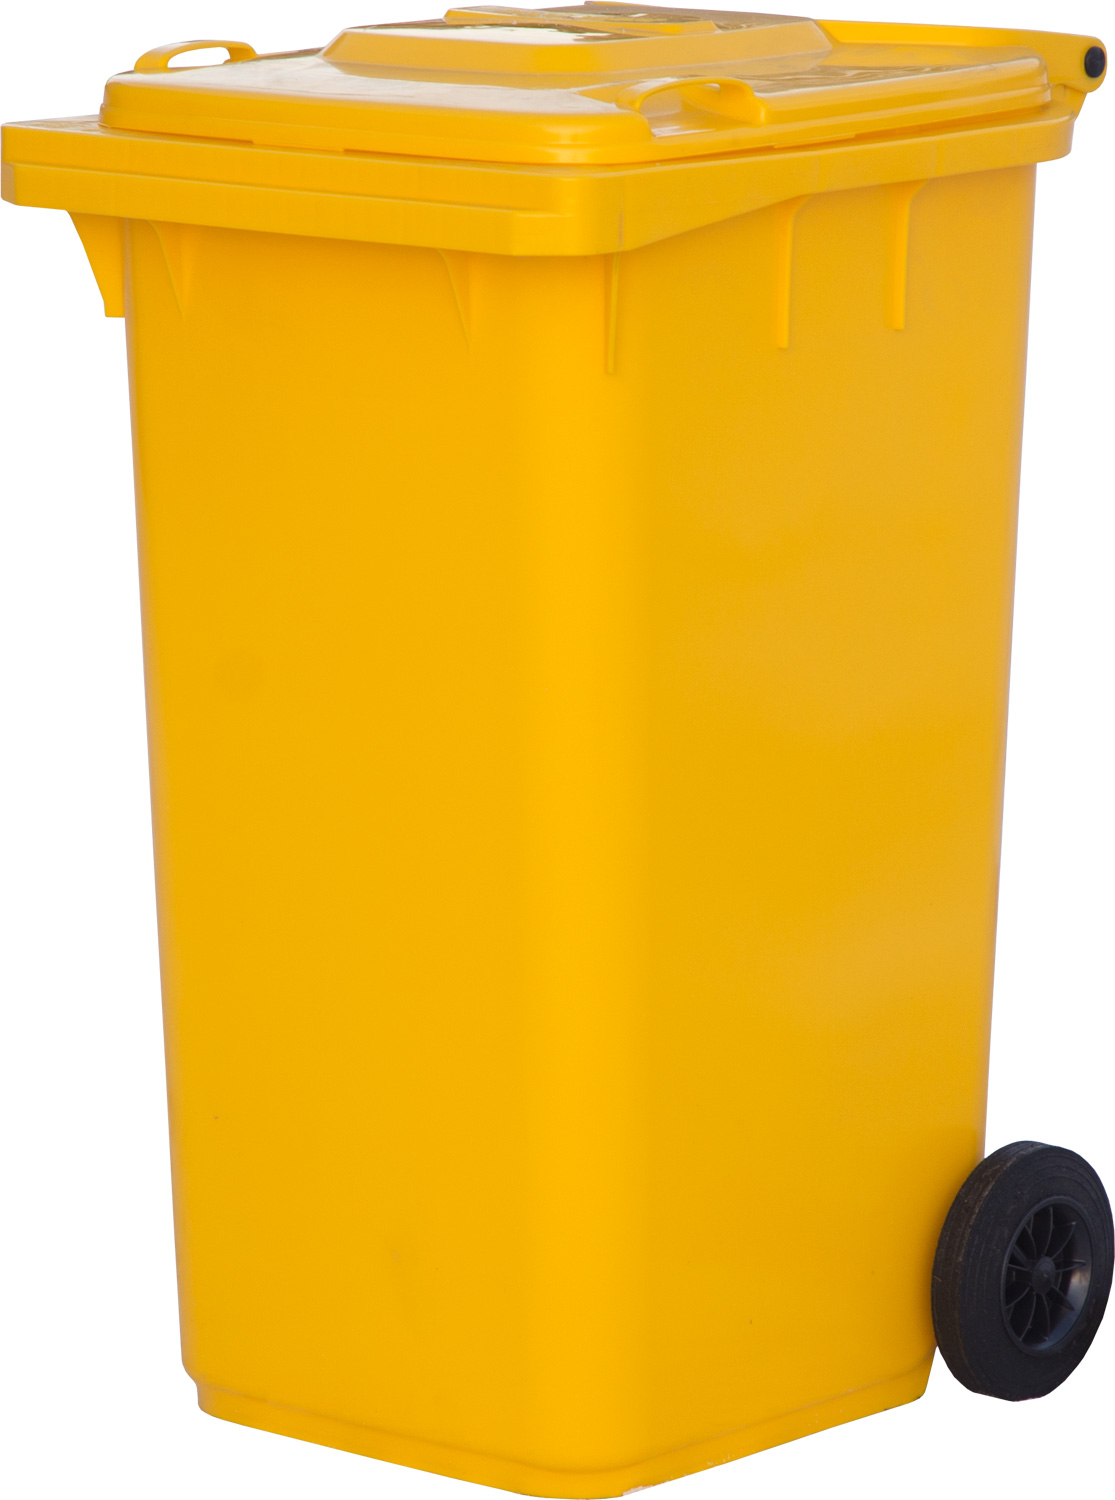 Мусорный контейнер МКТ 240 желтый 730x580x1060 мм Полиэтилен низкого давления (HDPE) 240 л